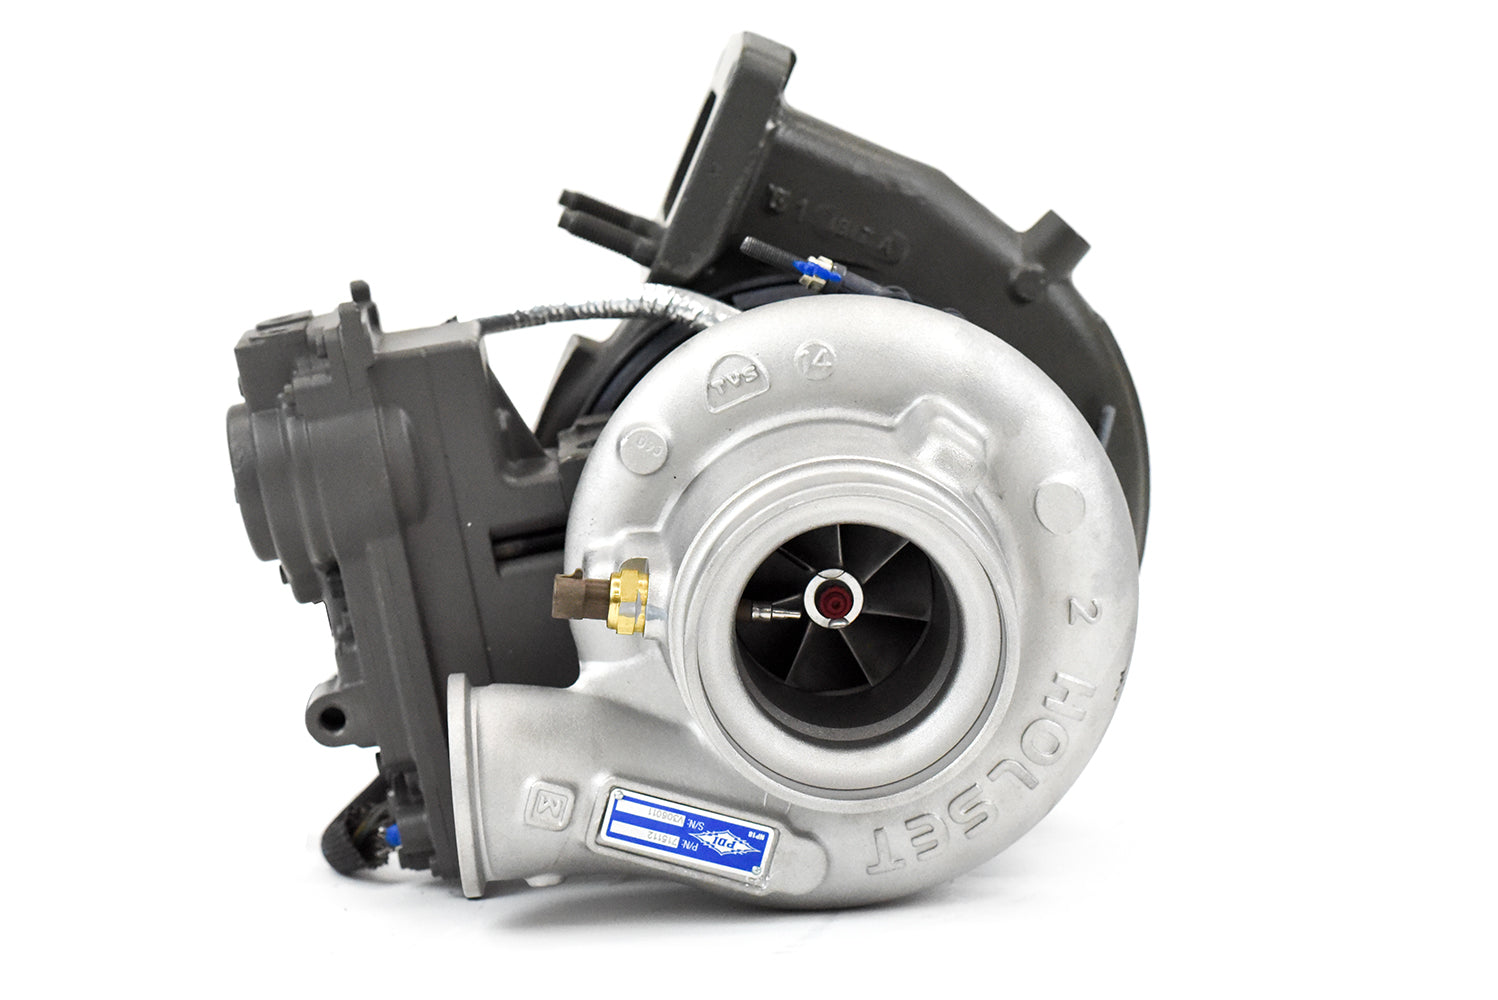 PDI Reman VGT Turbo for ISX Cummins 2010-2013 - Performance Diesel Inc